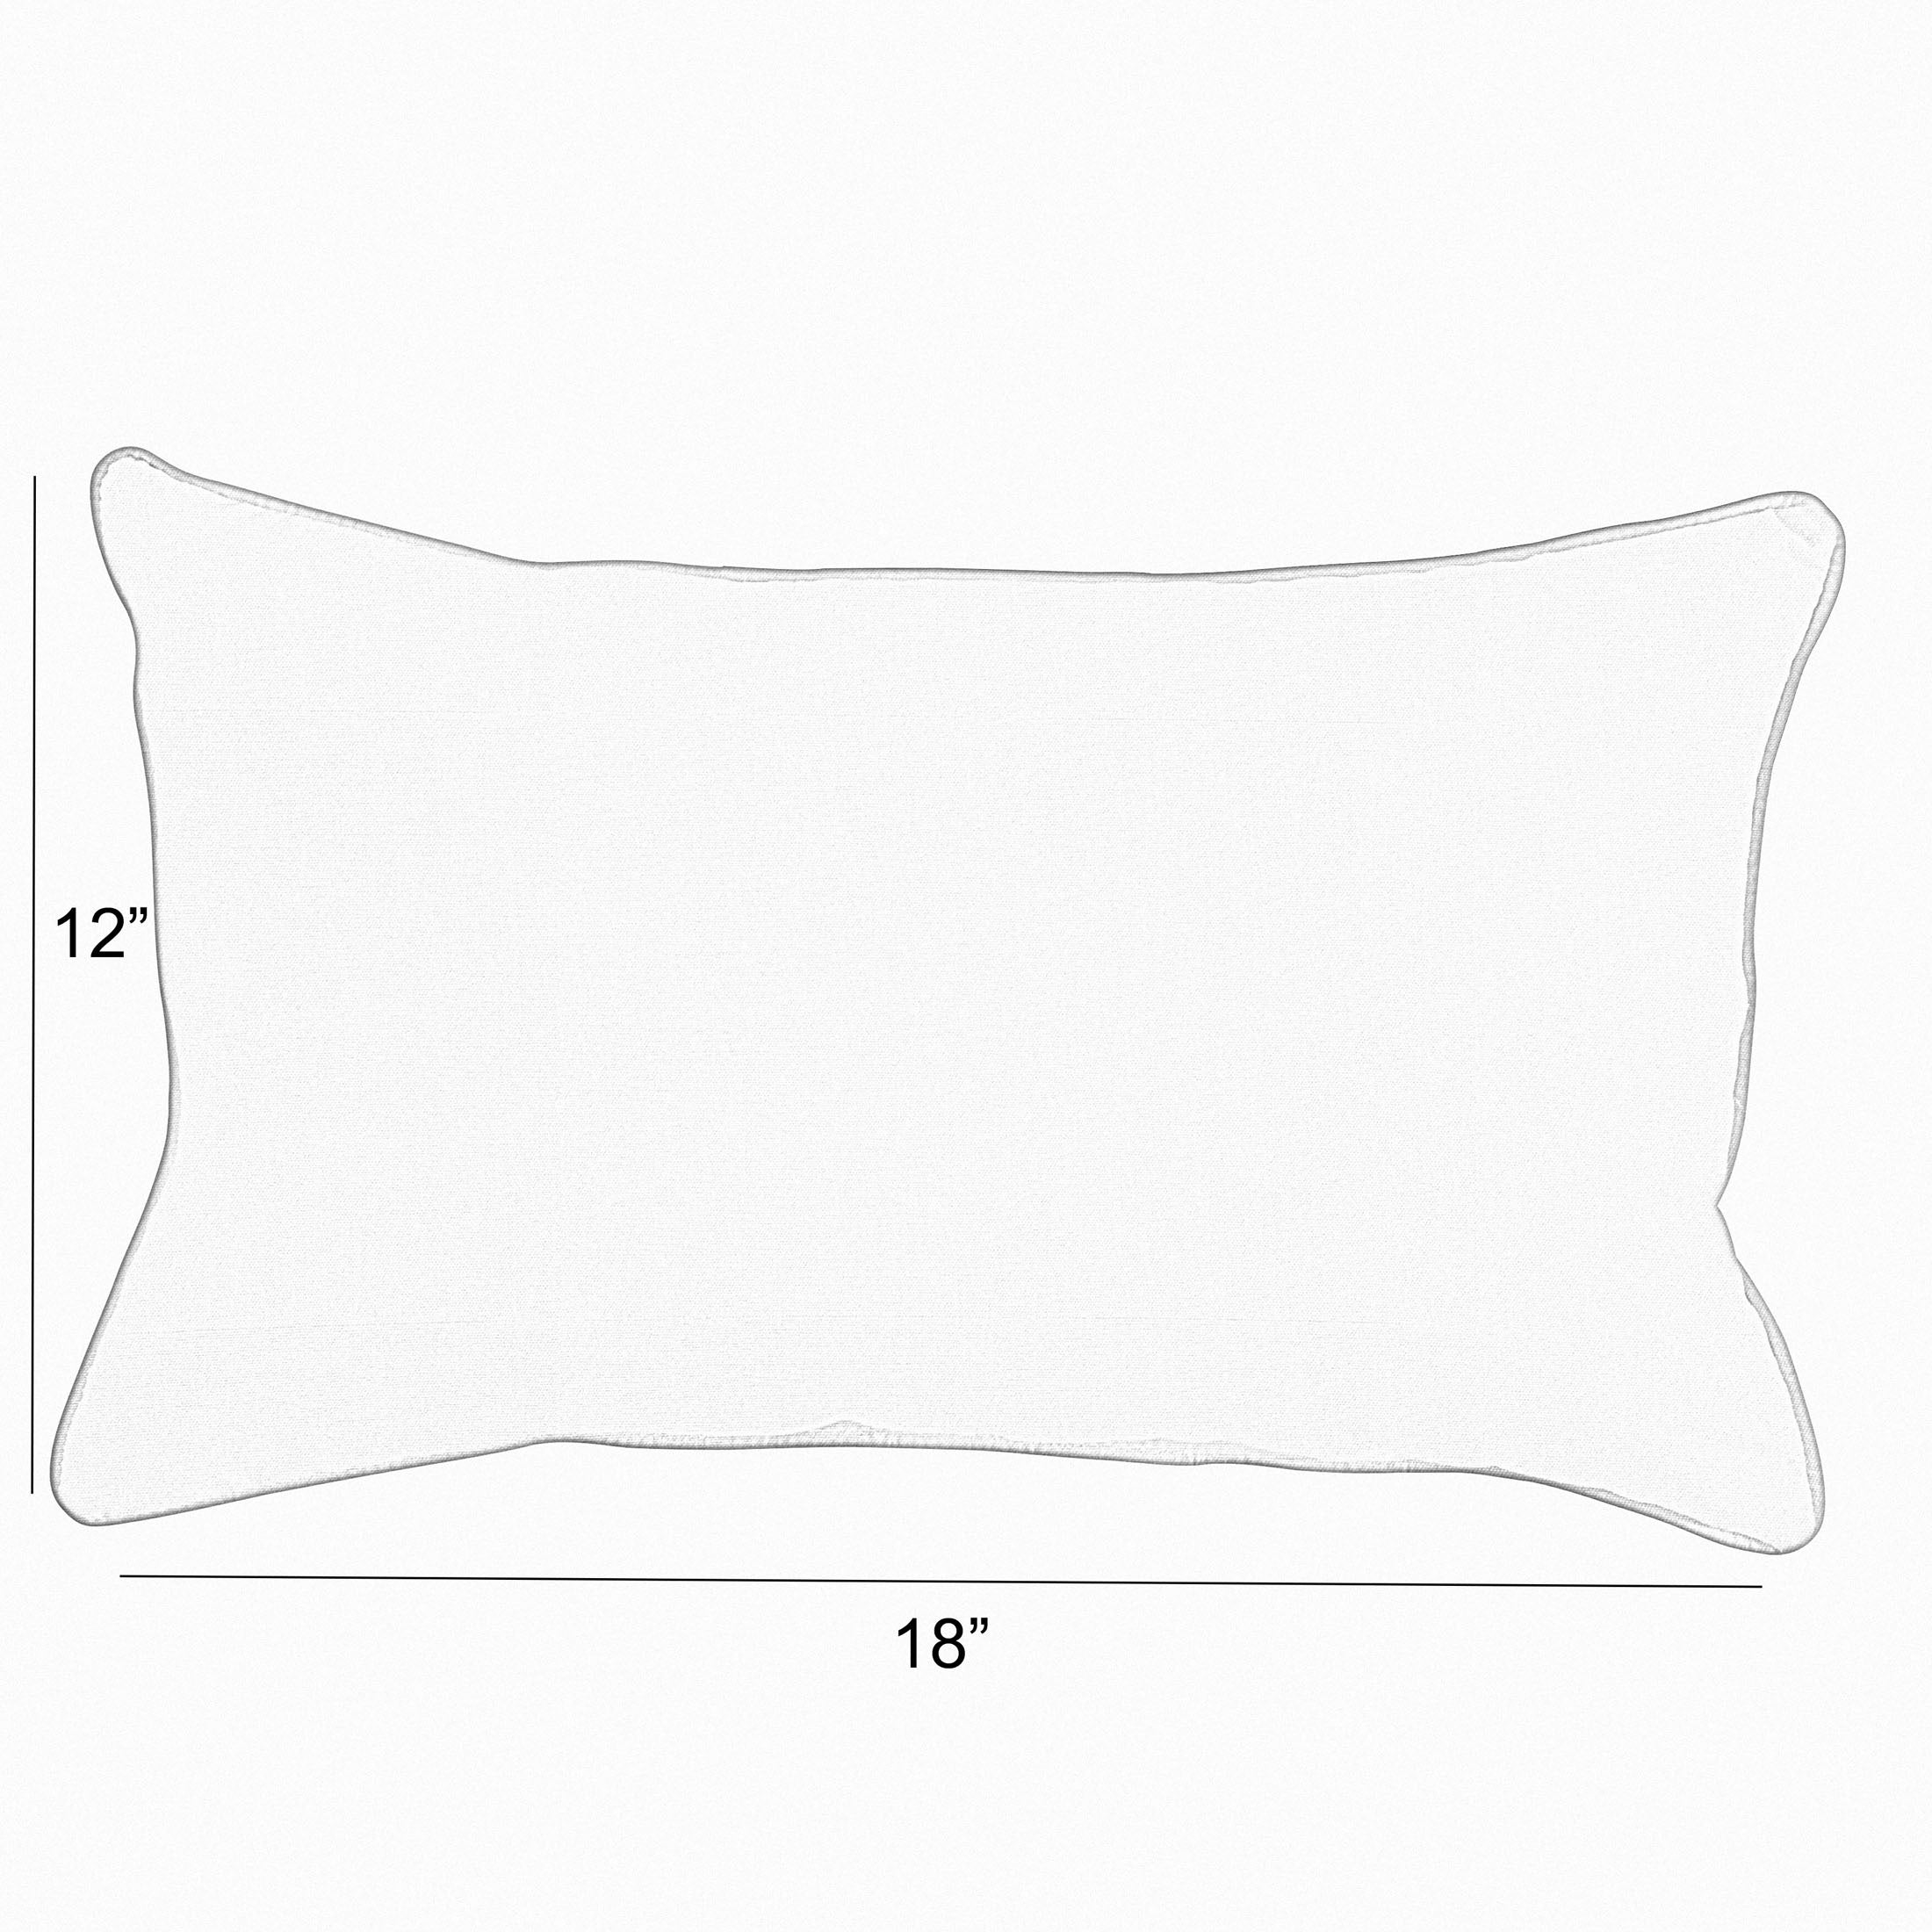 Sunbrella Namibia Grey Lumbar Corded Pillow (Set of 2)